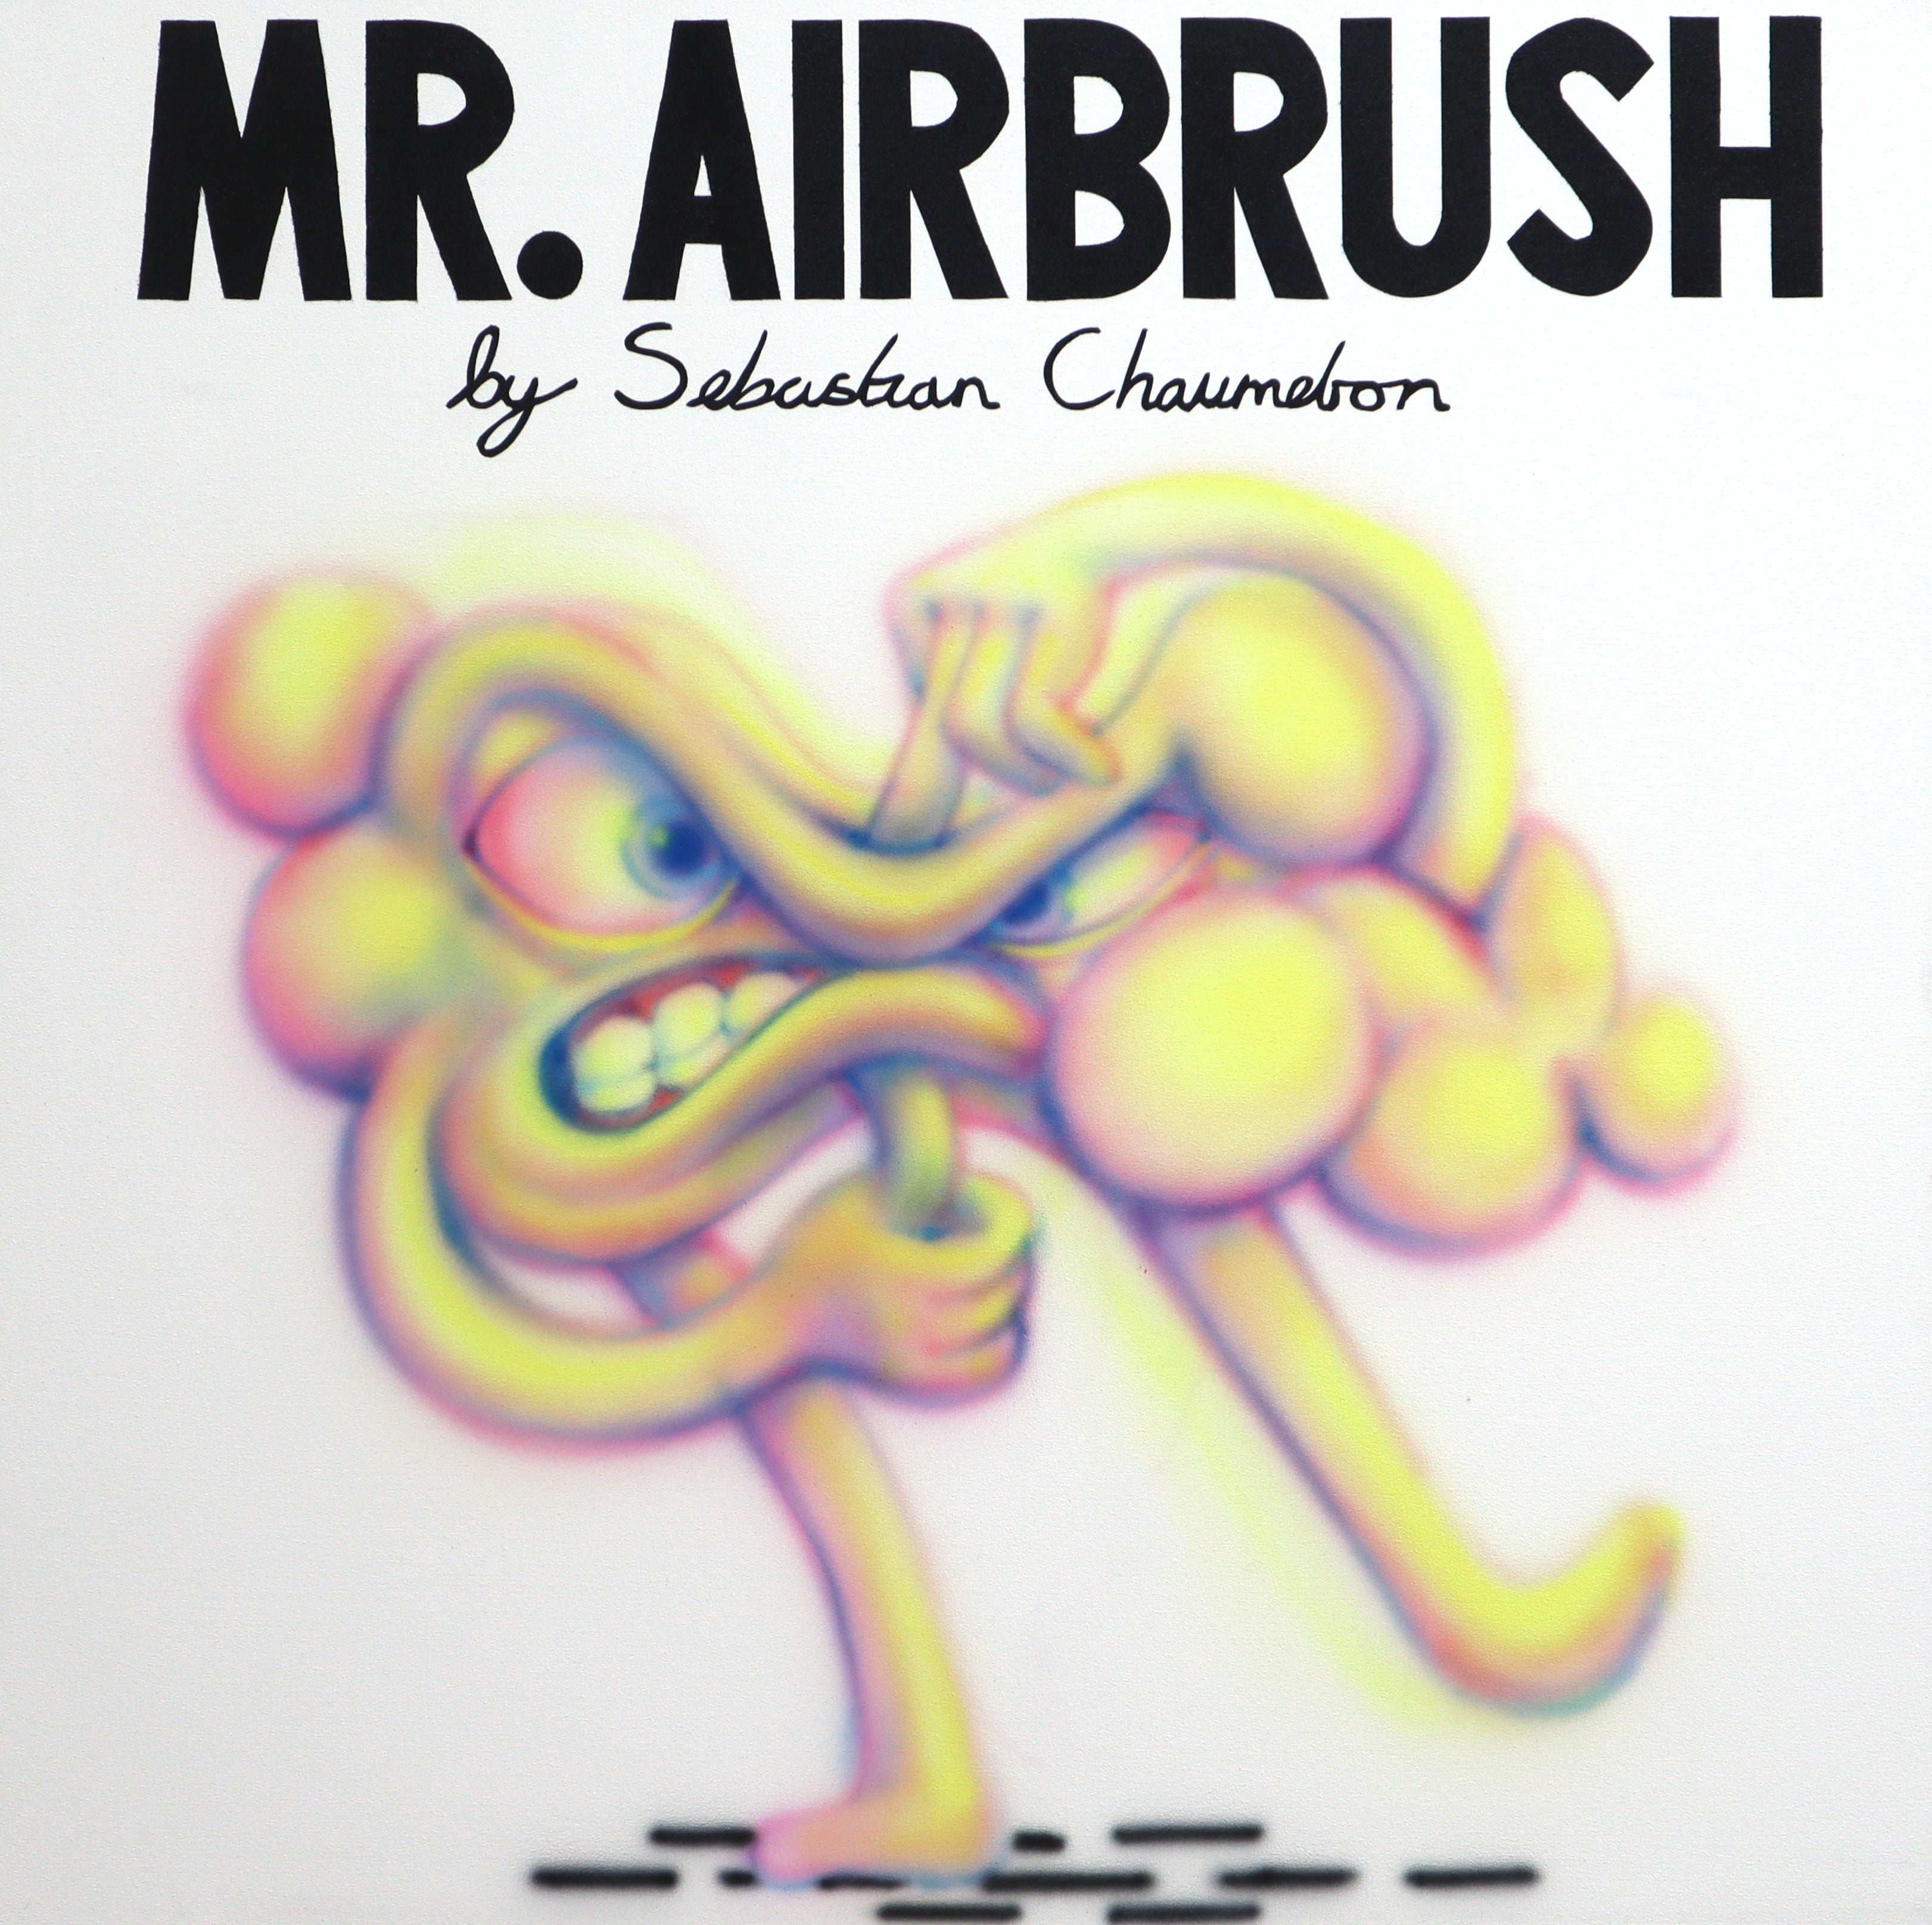 MR. AIRBRUSH